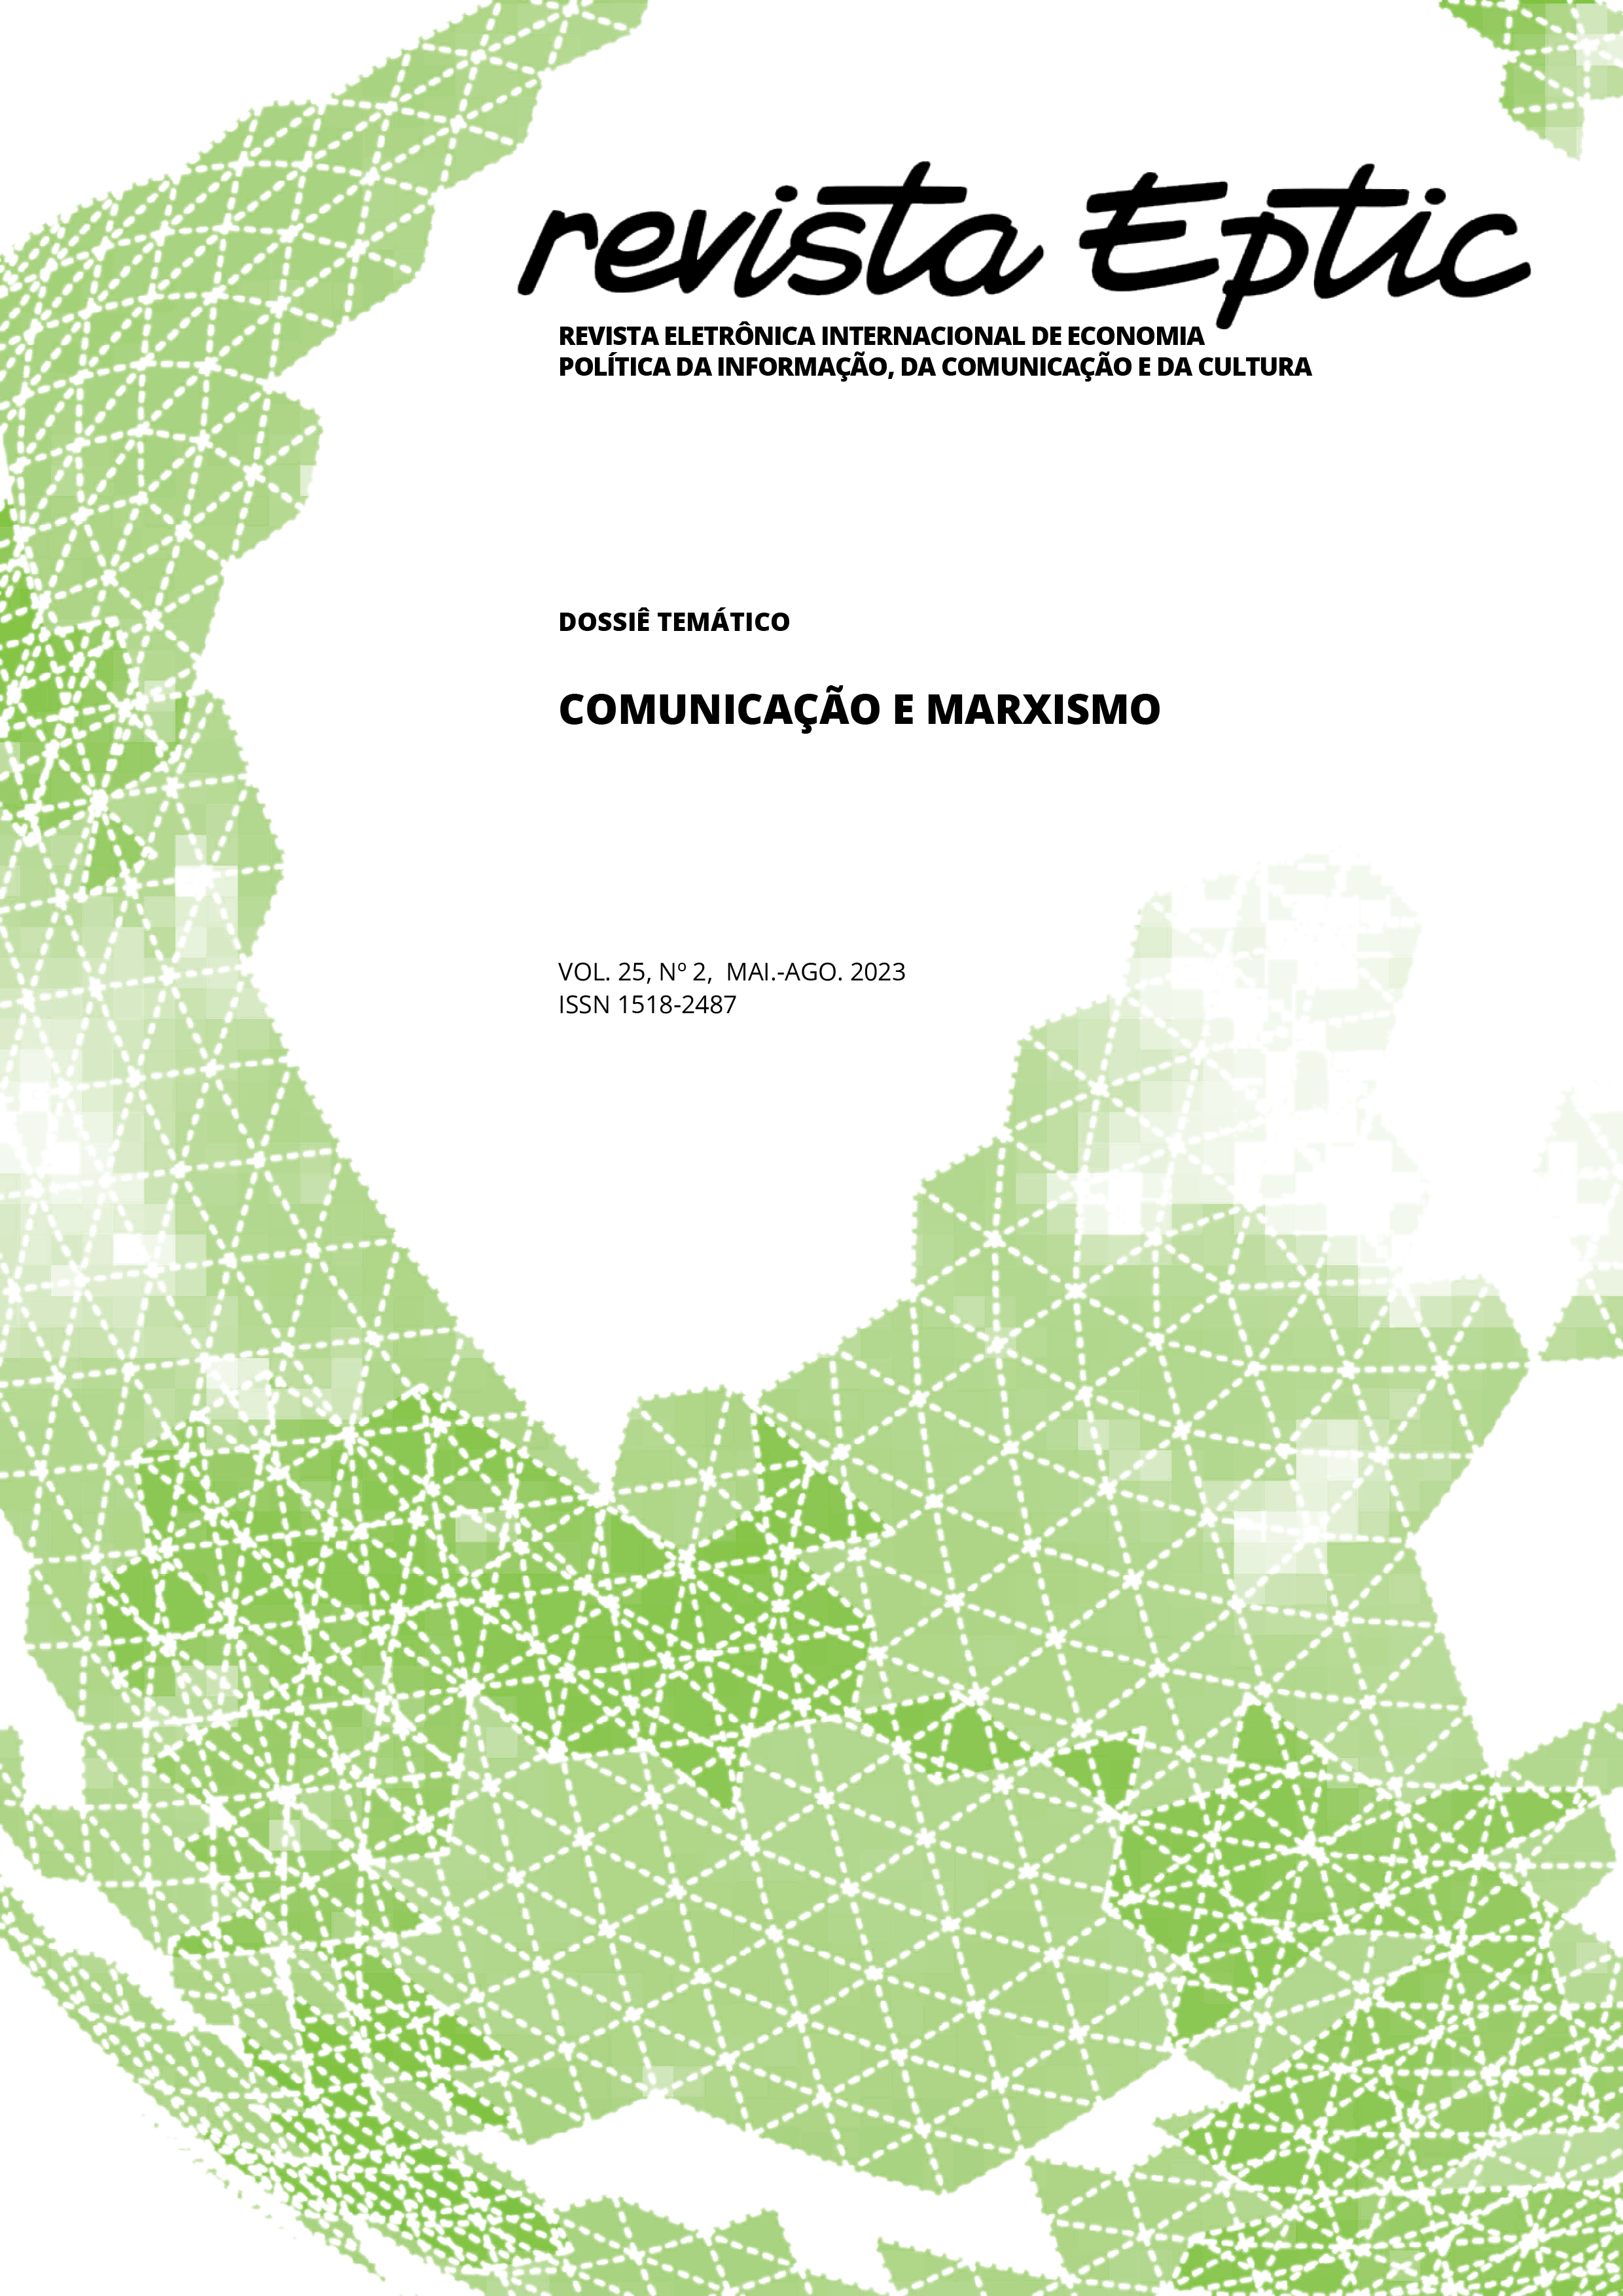 					Visualizar v. 25 n. 2 (2023): Revista EPTIC - Dossiê Temático Comunicação e Marxismo
				